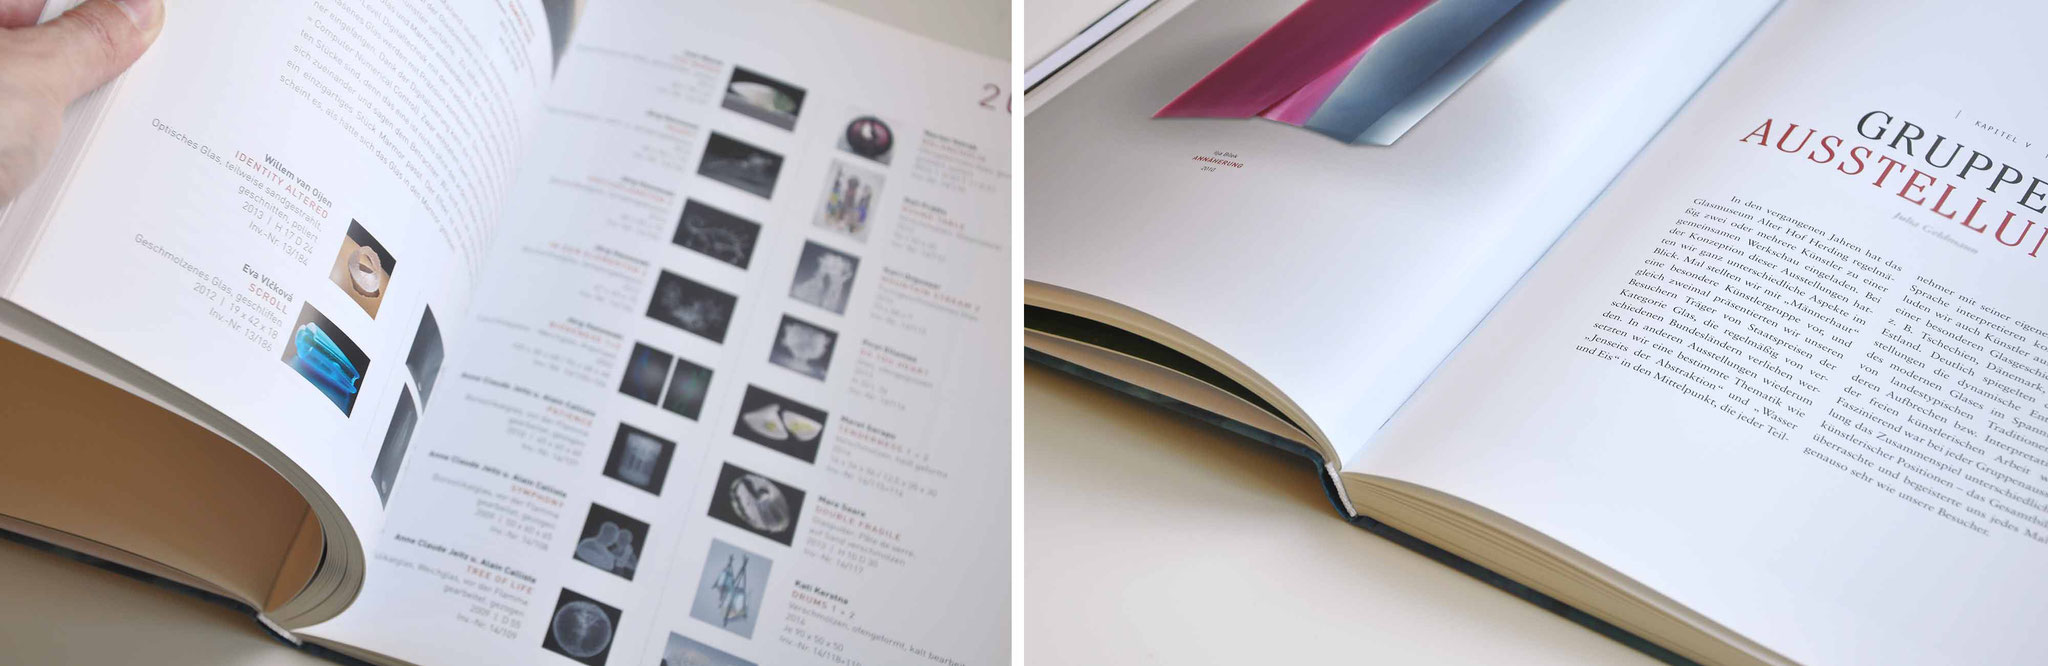 Gestaltung von Büchern und Bildbänden – SATZDRUCK kreativ